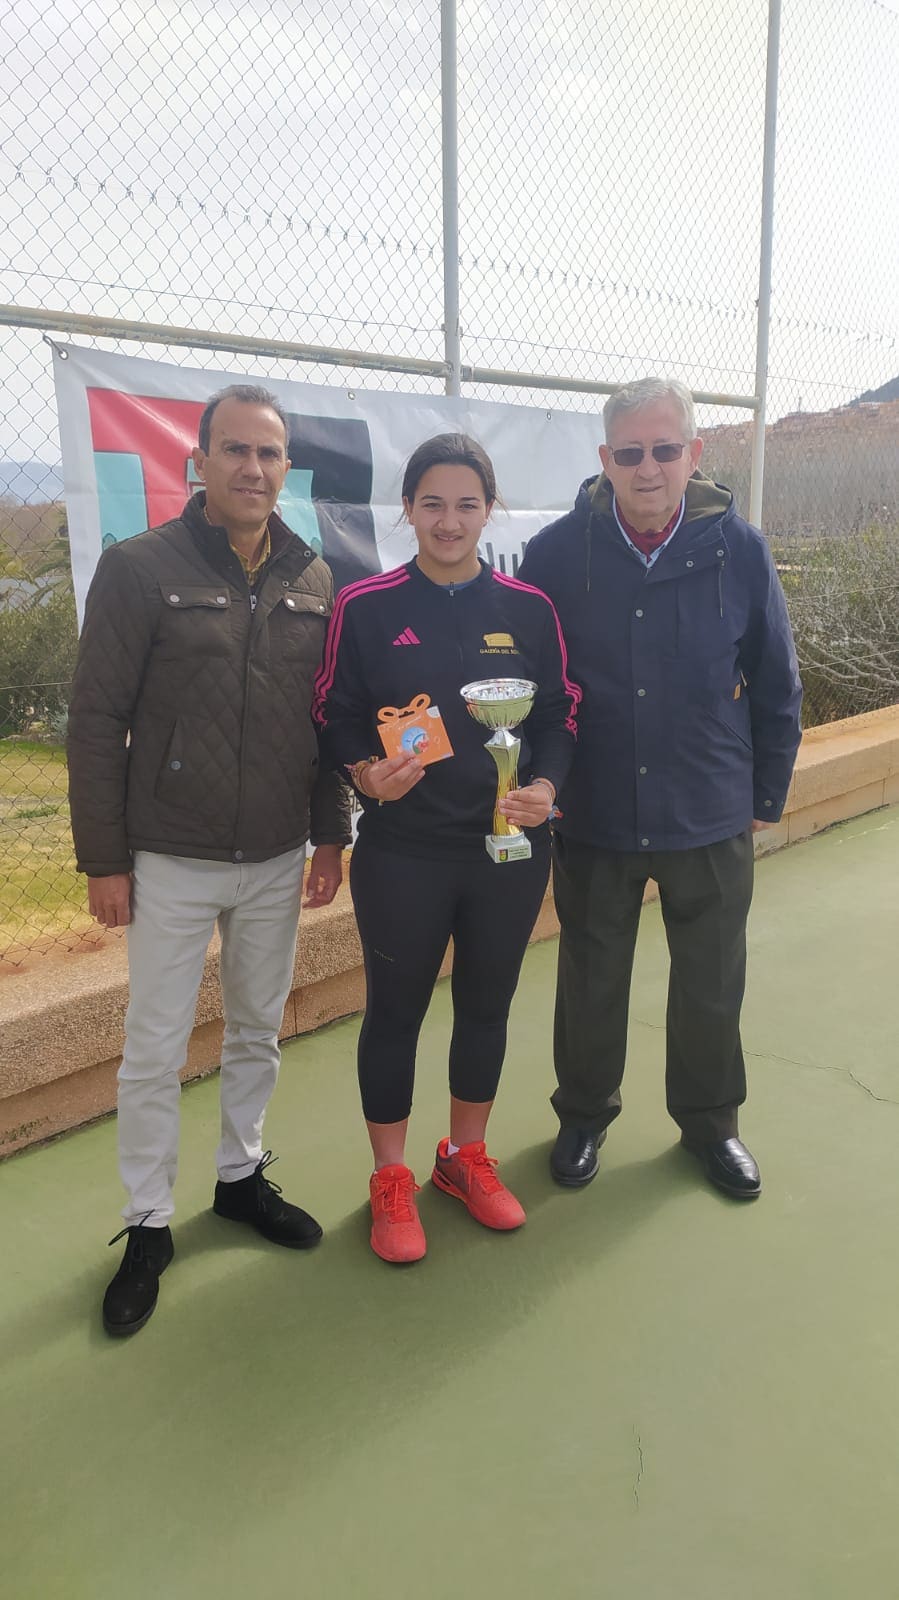 Araceli Moya gana con autoridad el XIV Trofeo de Tenis Ávolo Jaén Paraíso Interior en la modalidad cadete